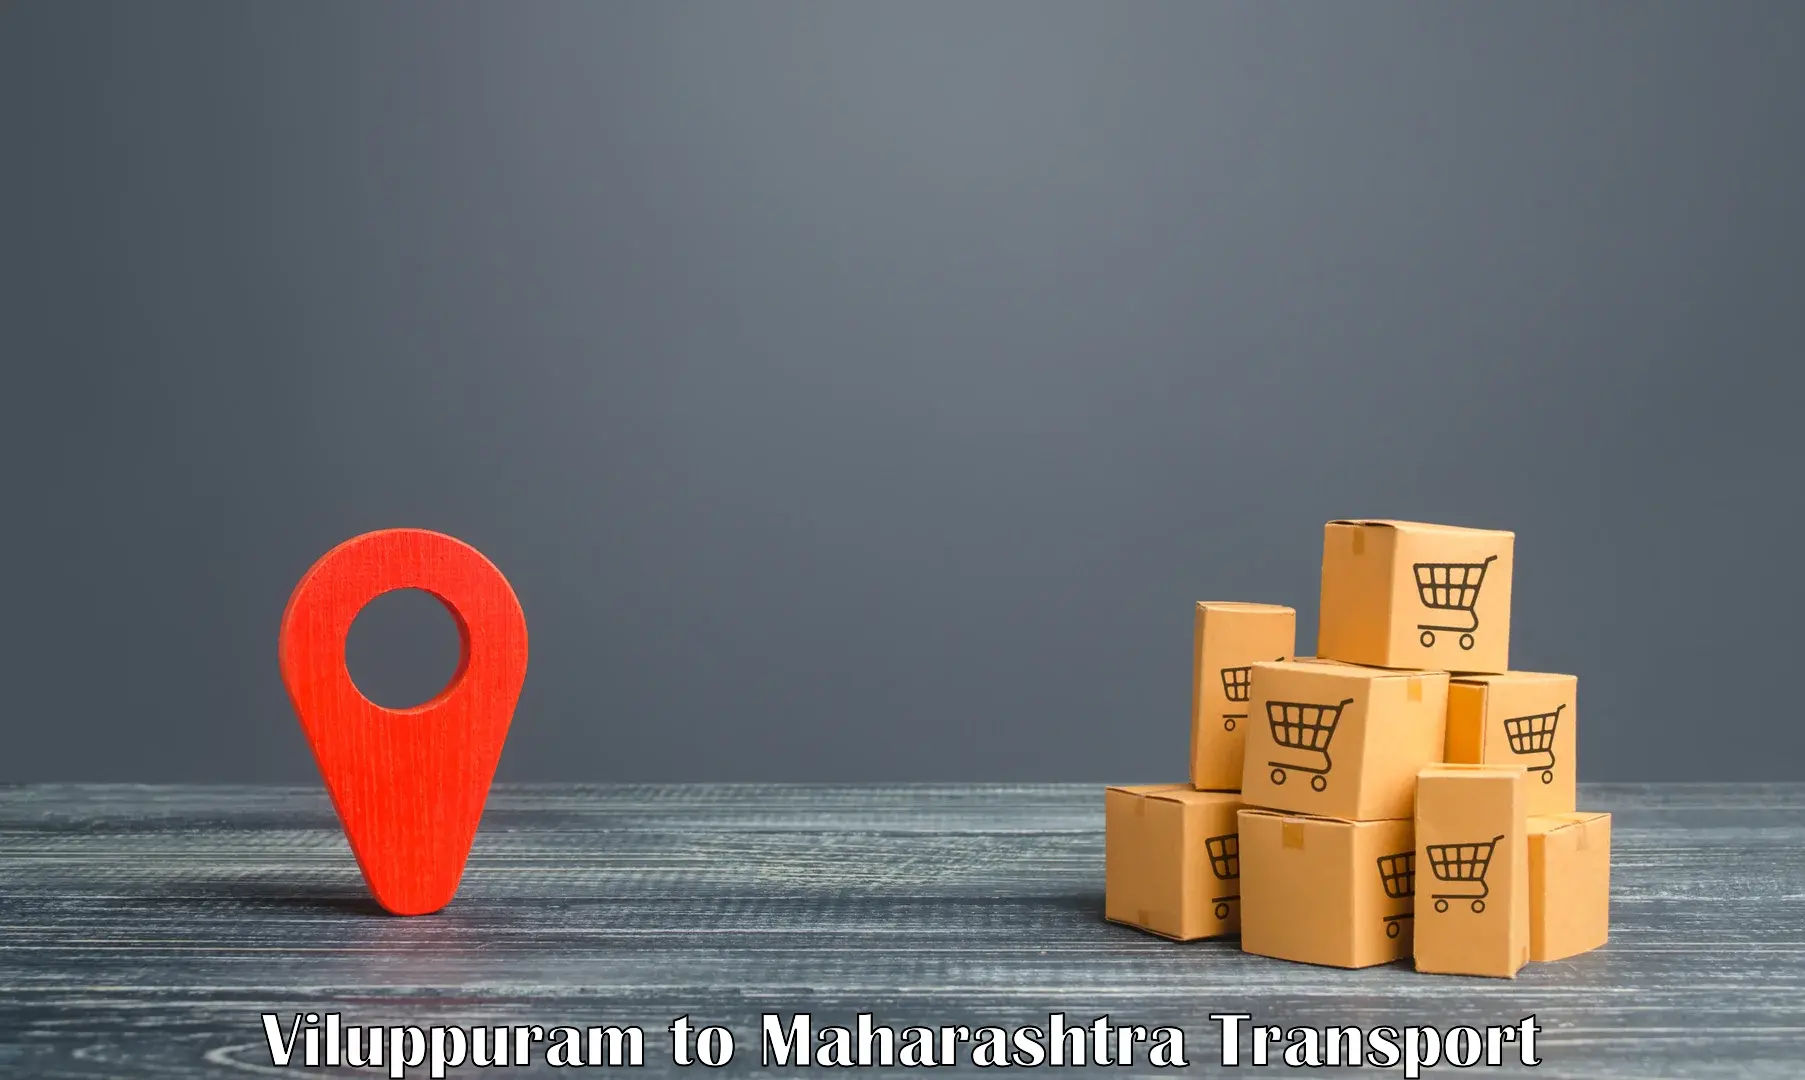 Daily parcel service transport Viluppuram to Malkapur